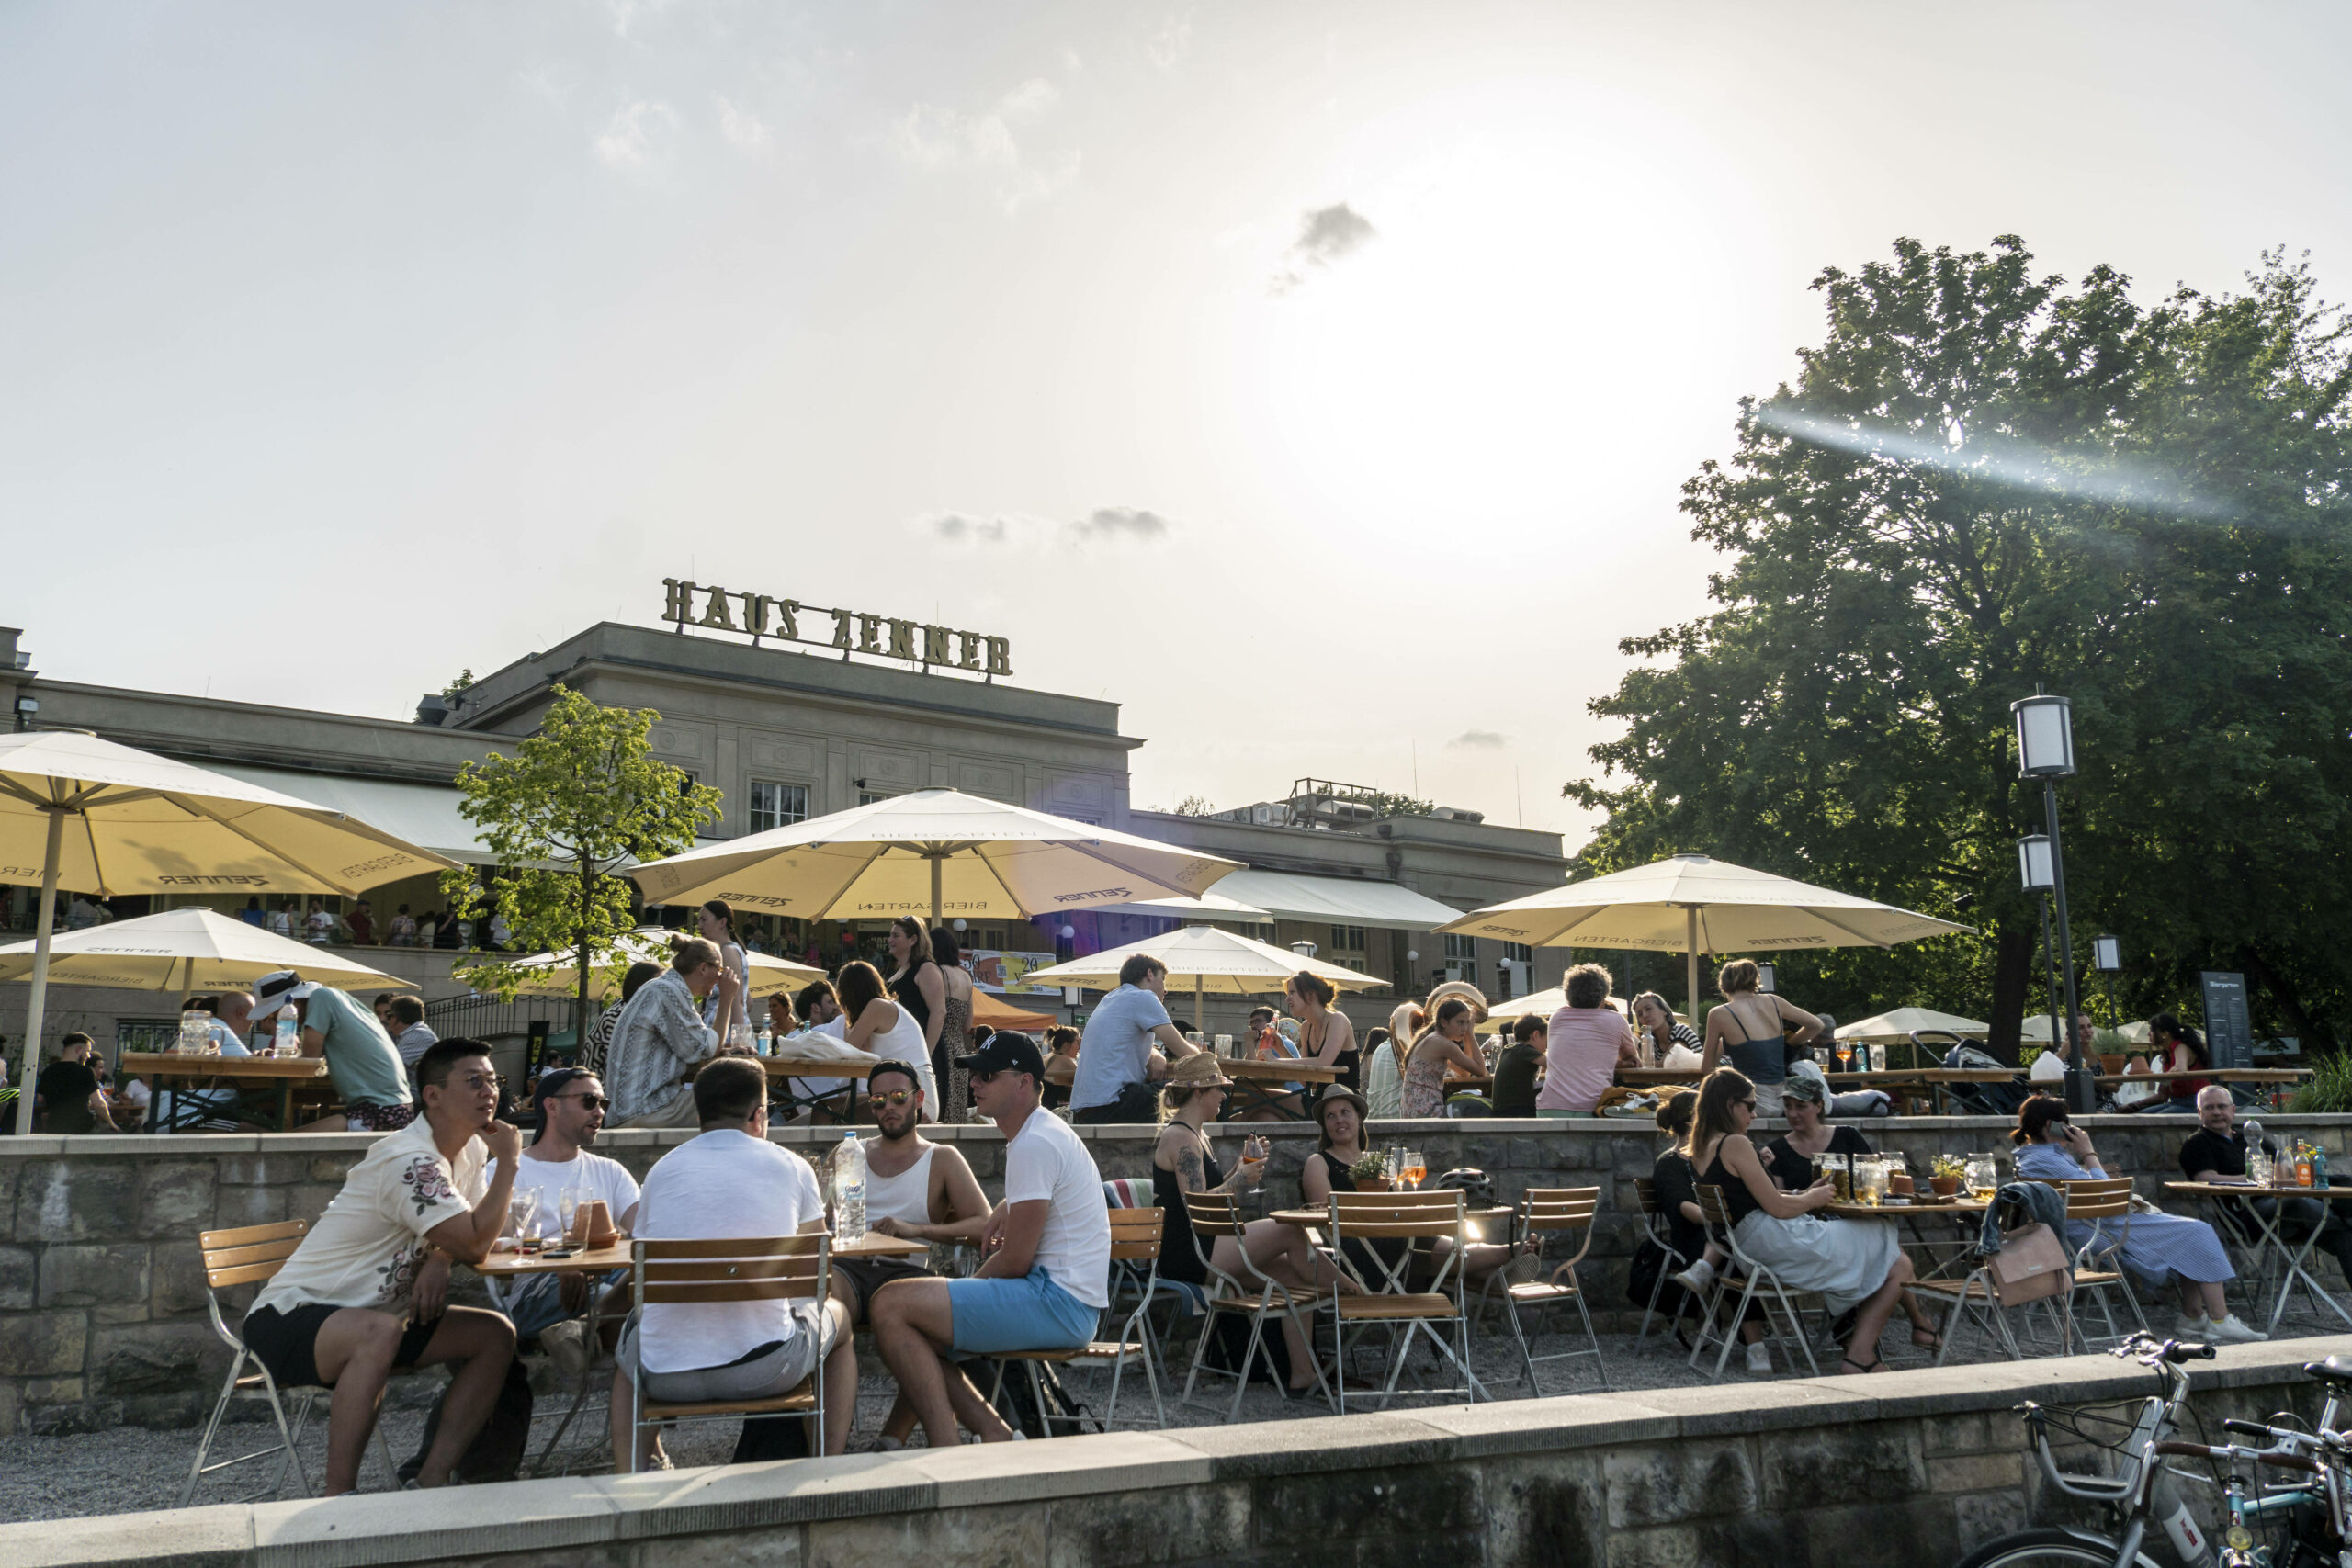 Im Treptower Park befindet sich der Zenner, ein Wein- und Biergarten am Wasser. Foto: Imago/Jürgen Held